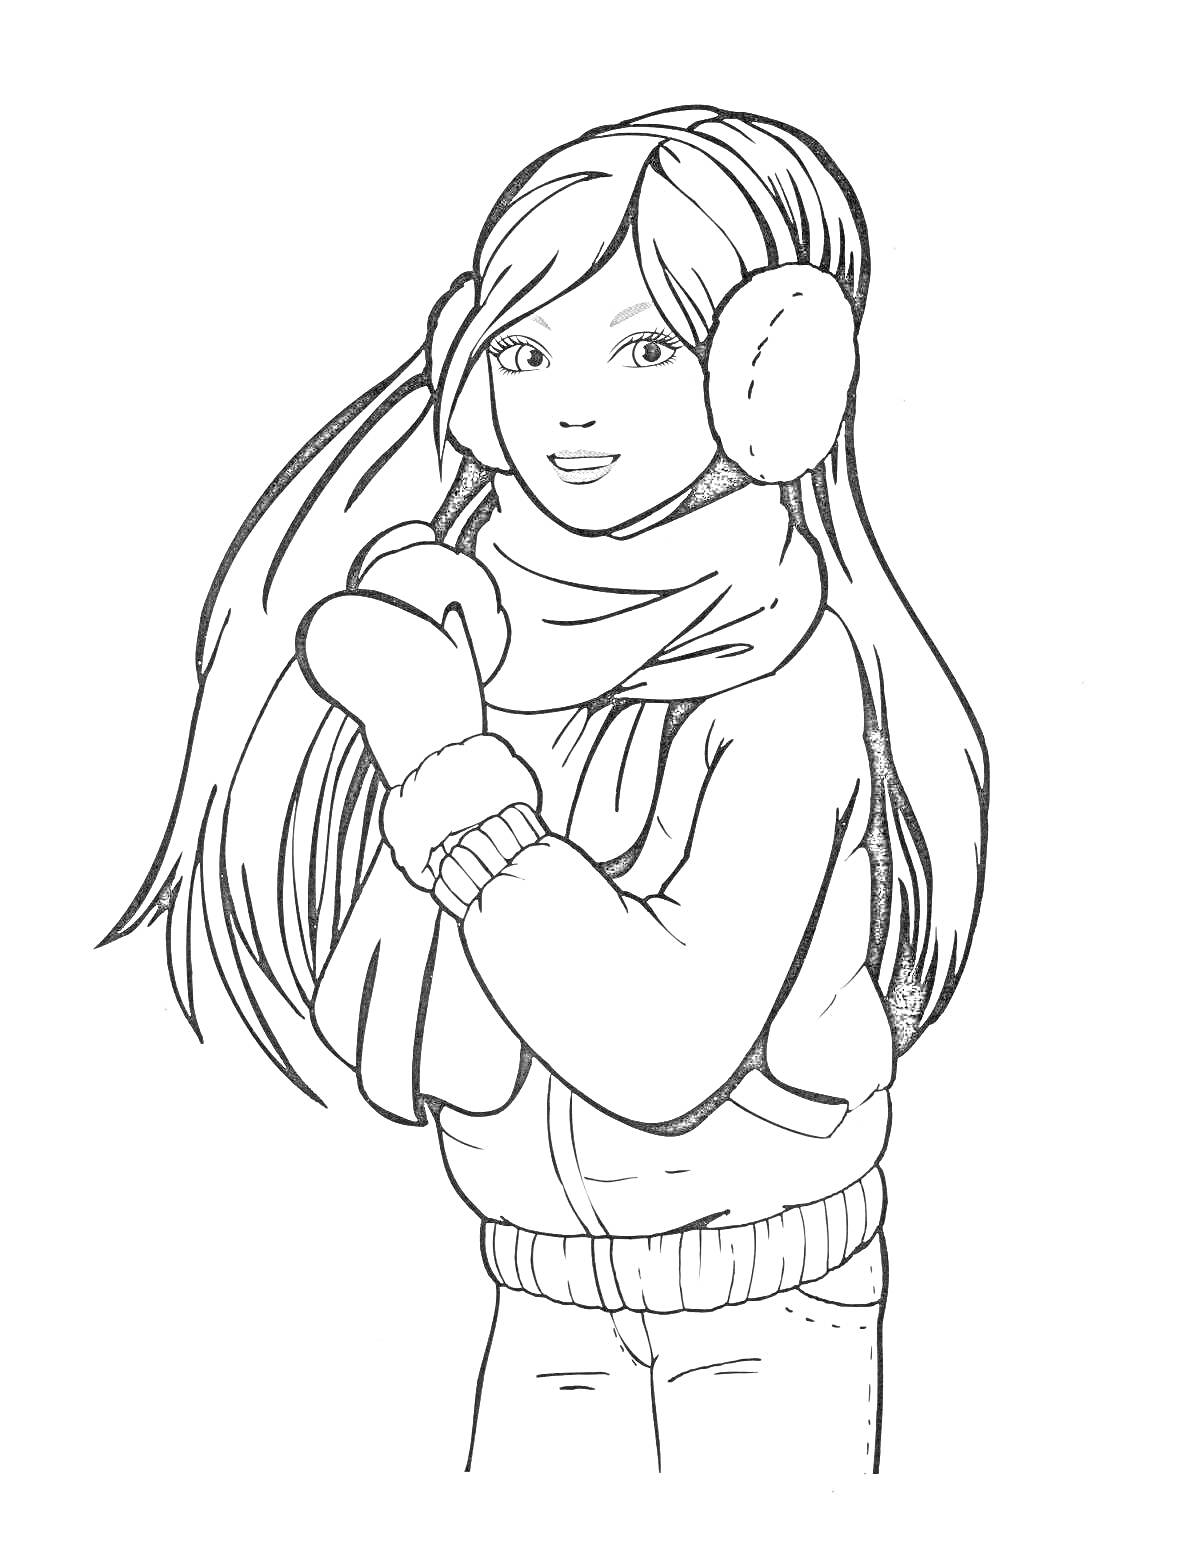 Девочка с длинными волосами в зимней одежде с наушниками и шарфом